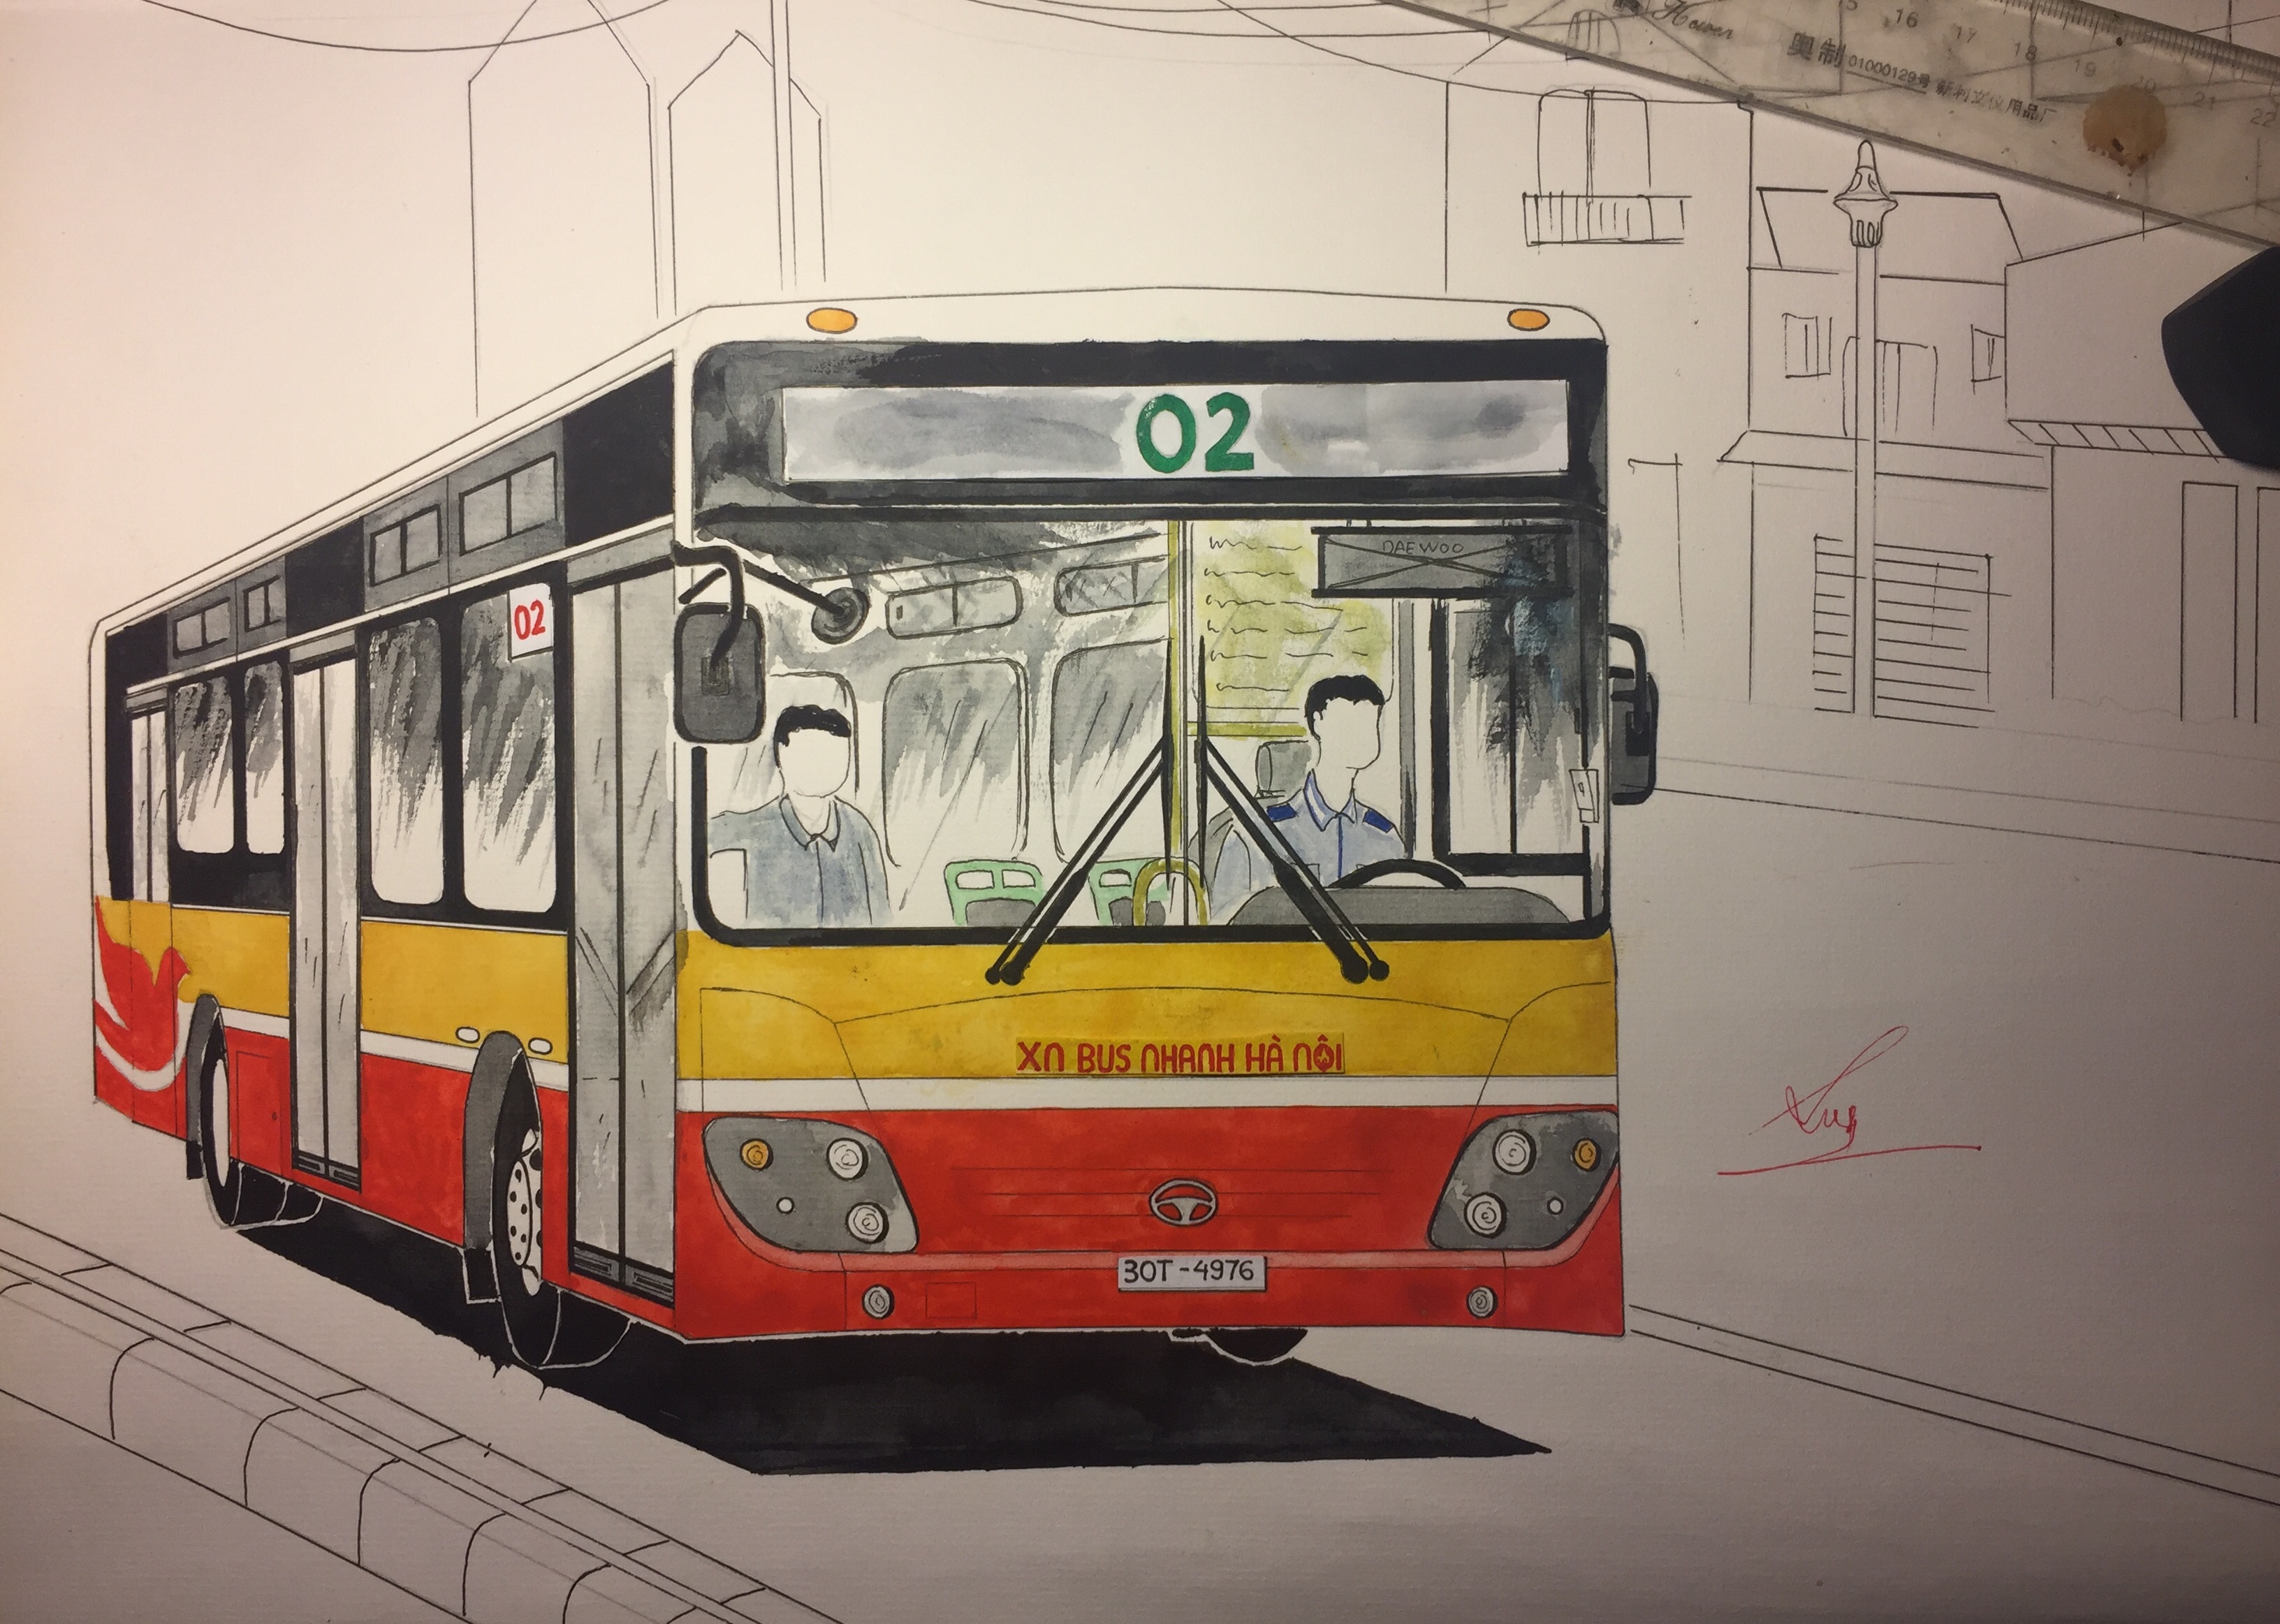 Chào mừng đến với bộ sưu tập tranh vẽ xe buýt Hà Nội! Hình ảnh này sẽ mang bạn đến với những cảnh đẹp của thành phố với các chuyến xe vận chuyển. Hãy khám phá những đường phố đông đúc được thể hiện trong tranh với màu sắc tươi sáng và sắc nét, và cảm nhận sự sống động của xe buýt trong tác phẩm này.